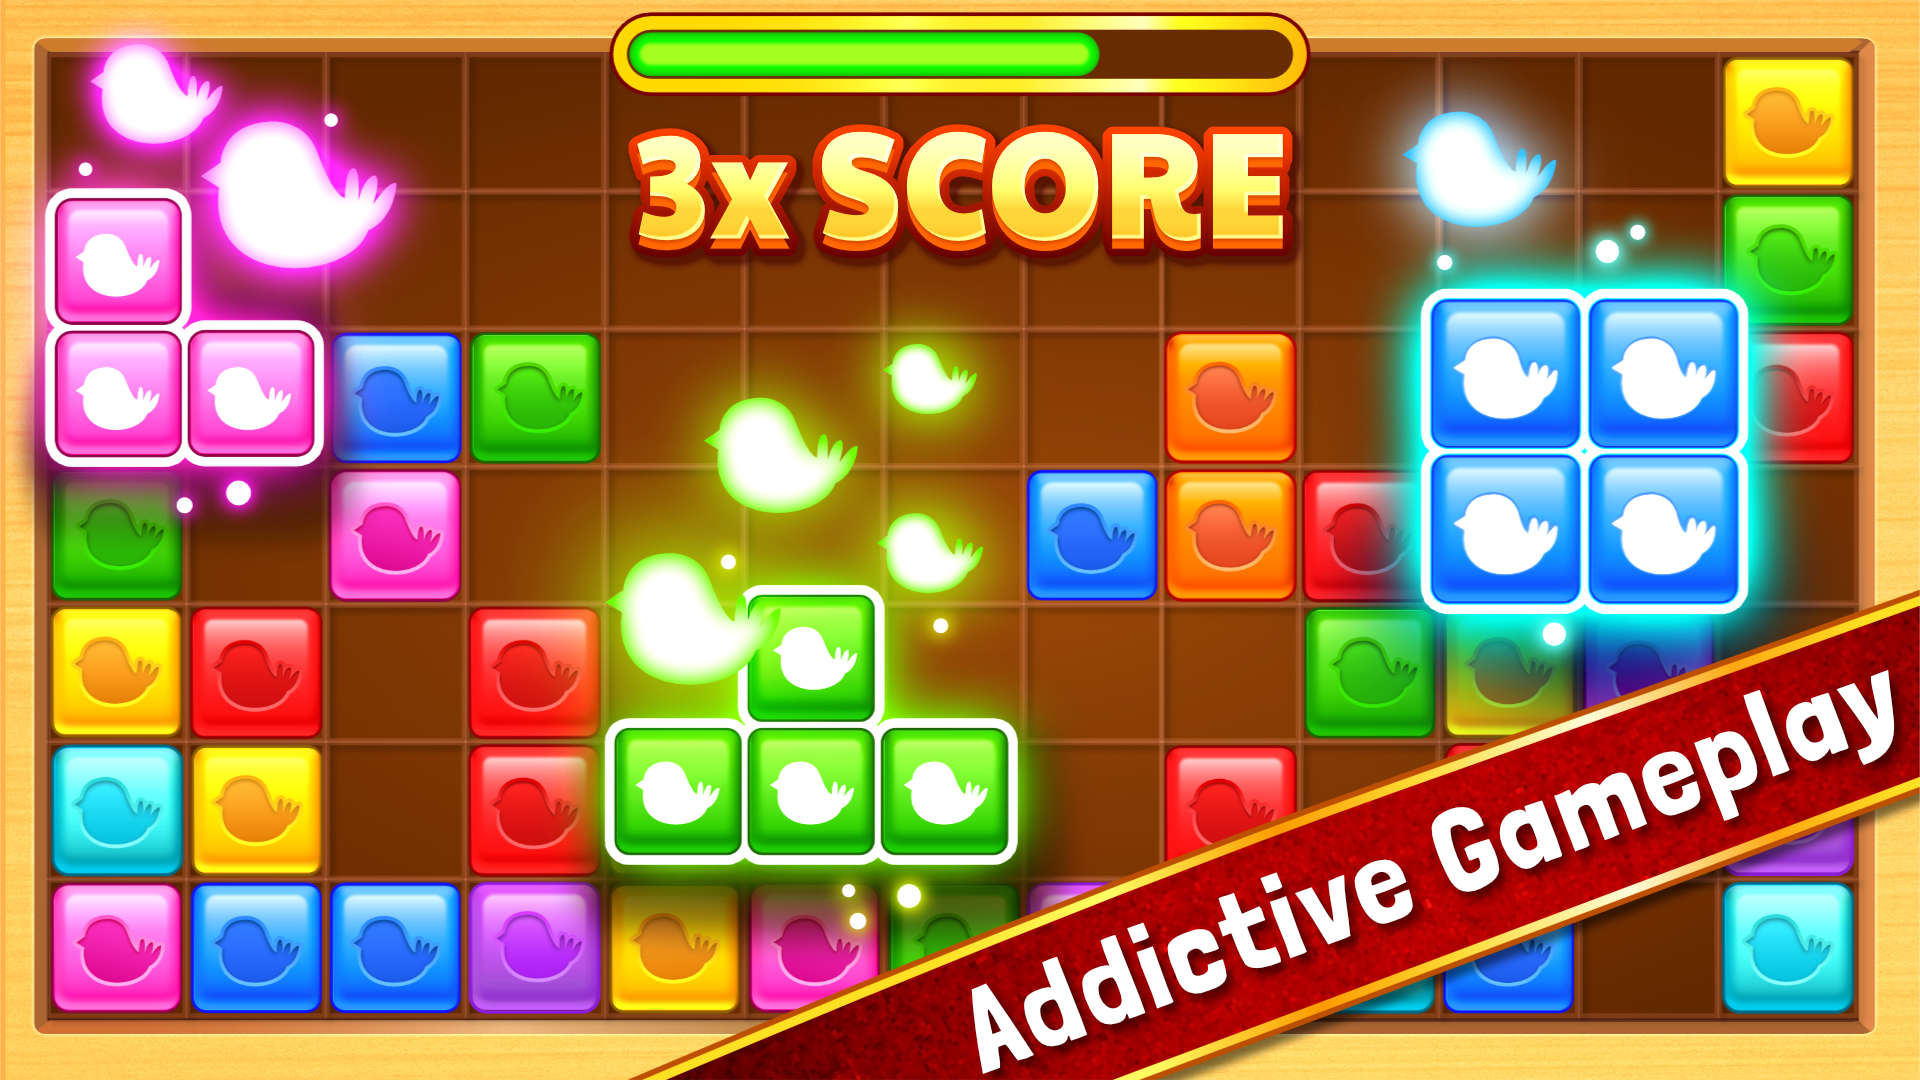 Block Puzzle Jewel Game - Free Addicting Puzzle Game